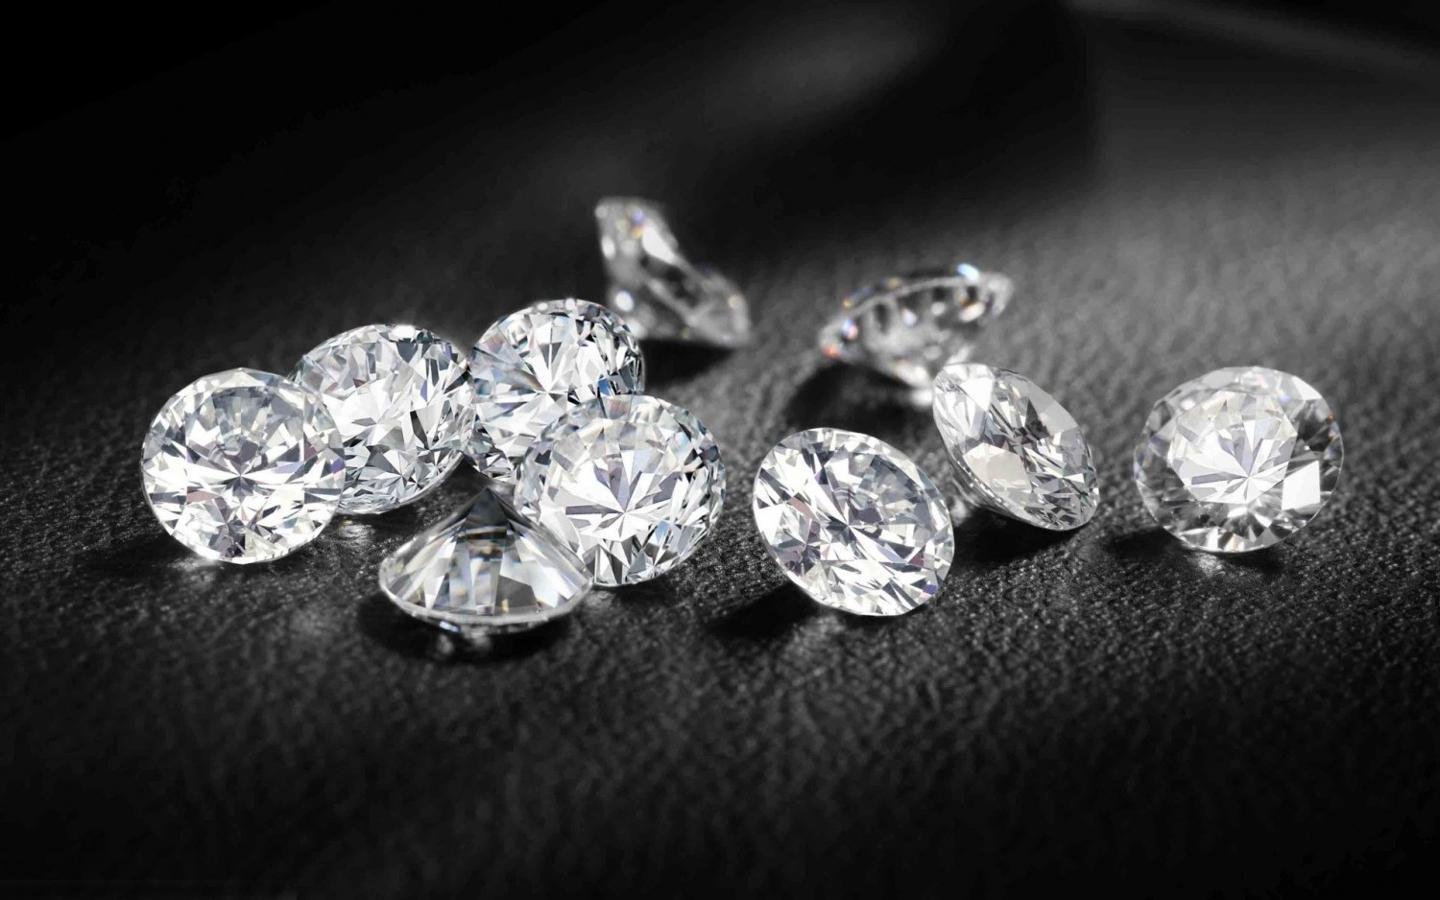 Diamanten als Wertanlage kaufen?